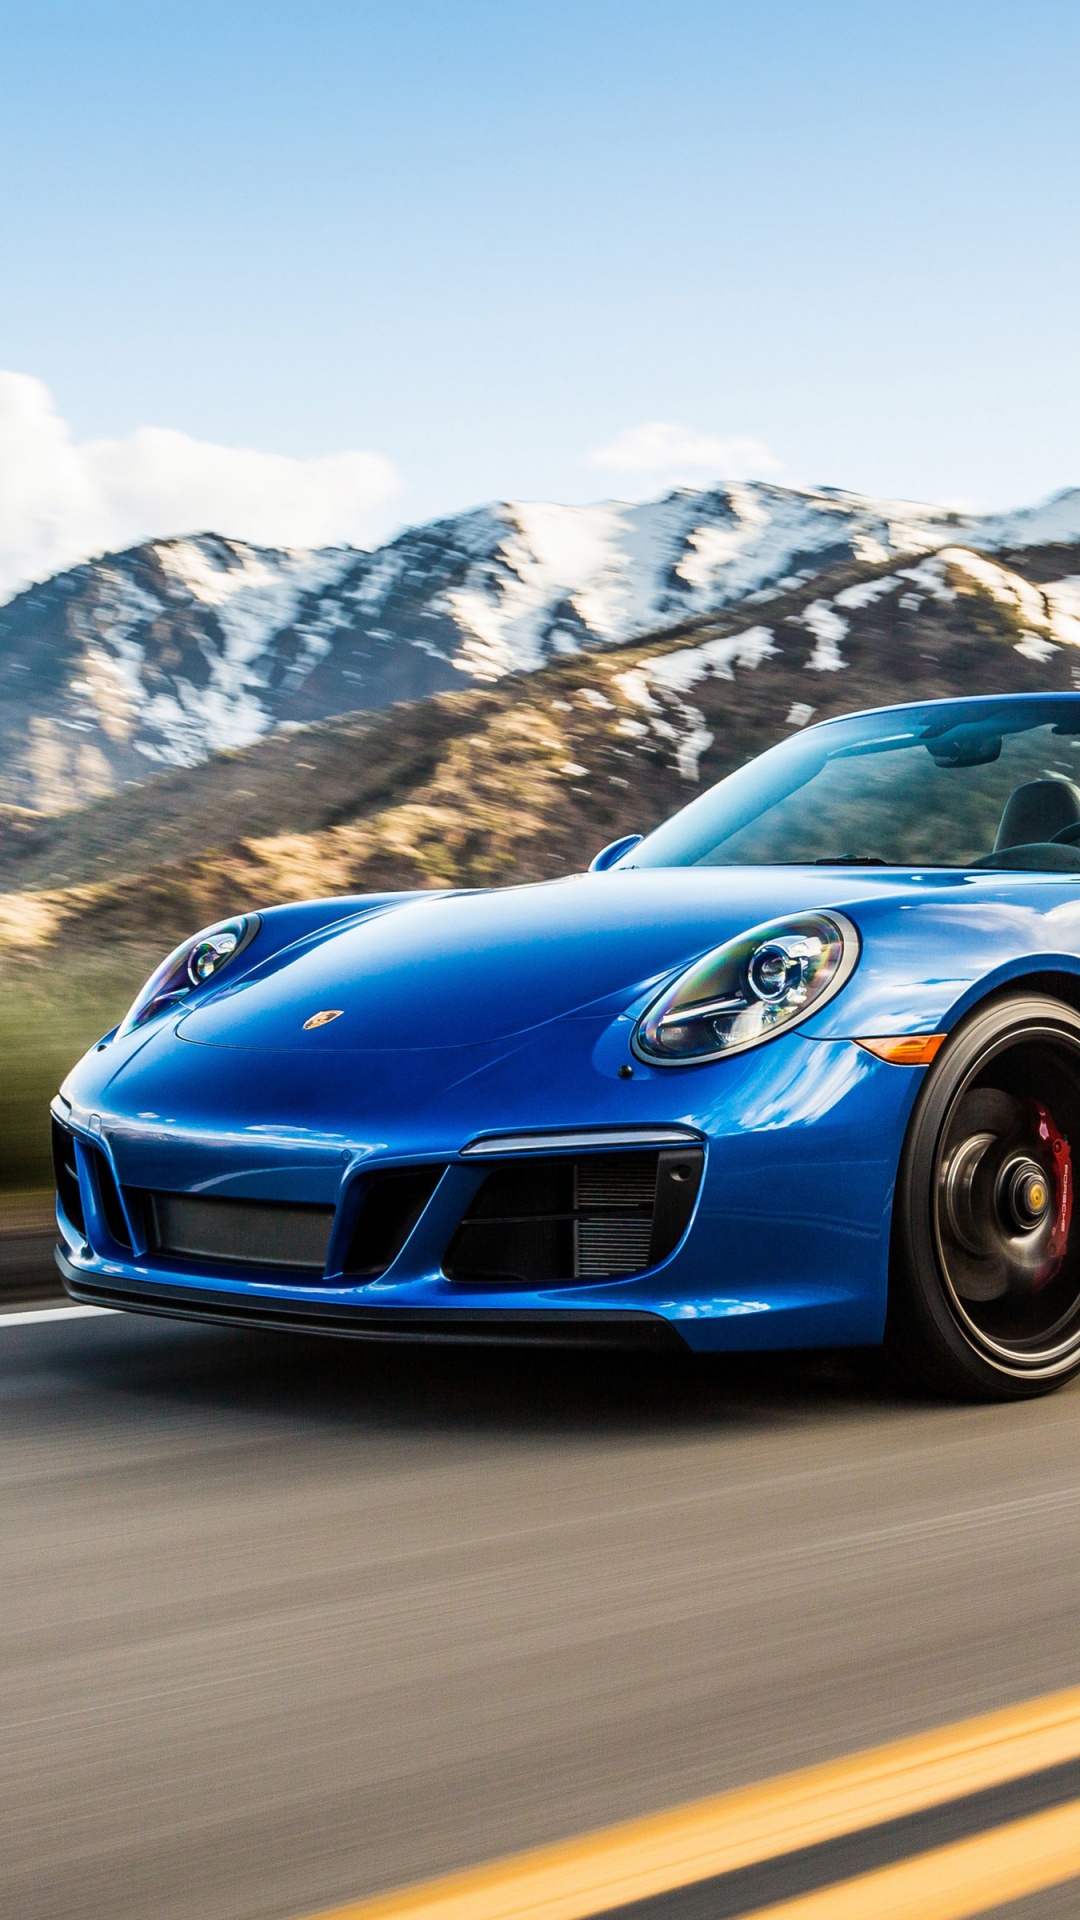 Porsche 911 Azul en la Carretera Durante el Día. Wallpaper in 1080x1920 Resolution